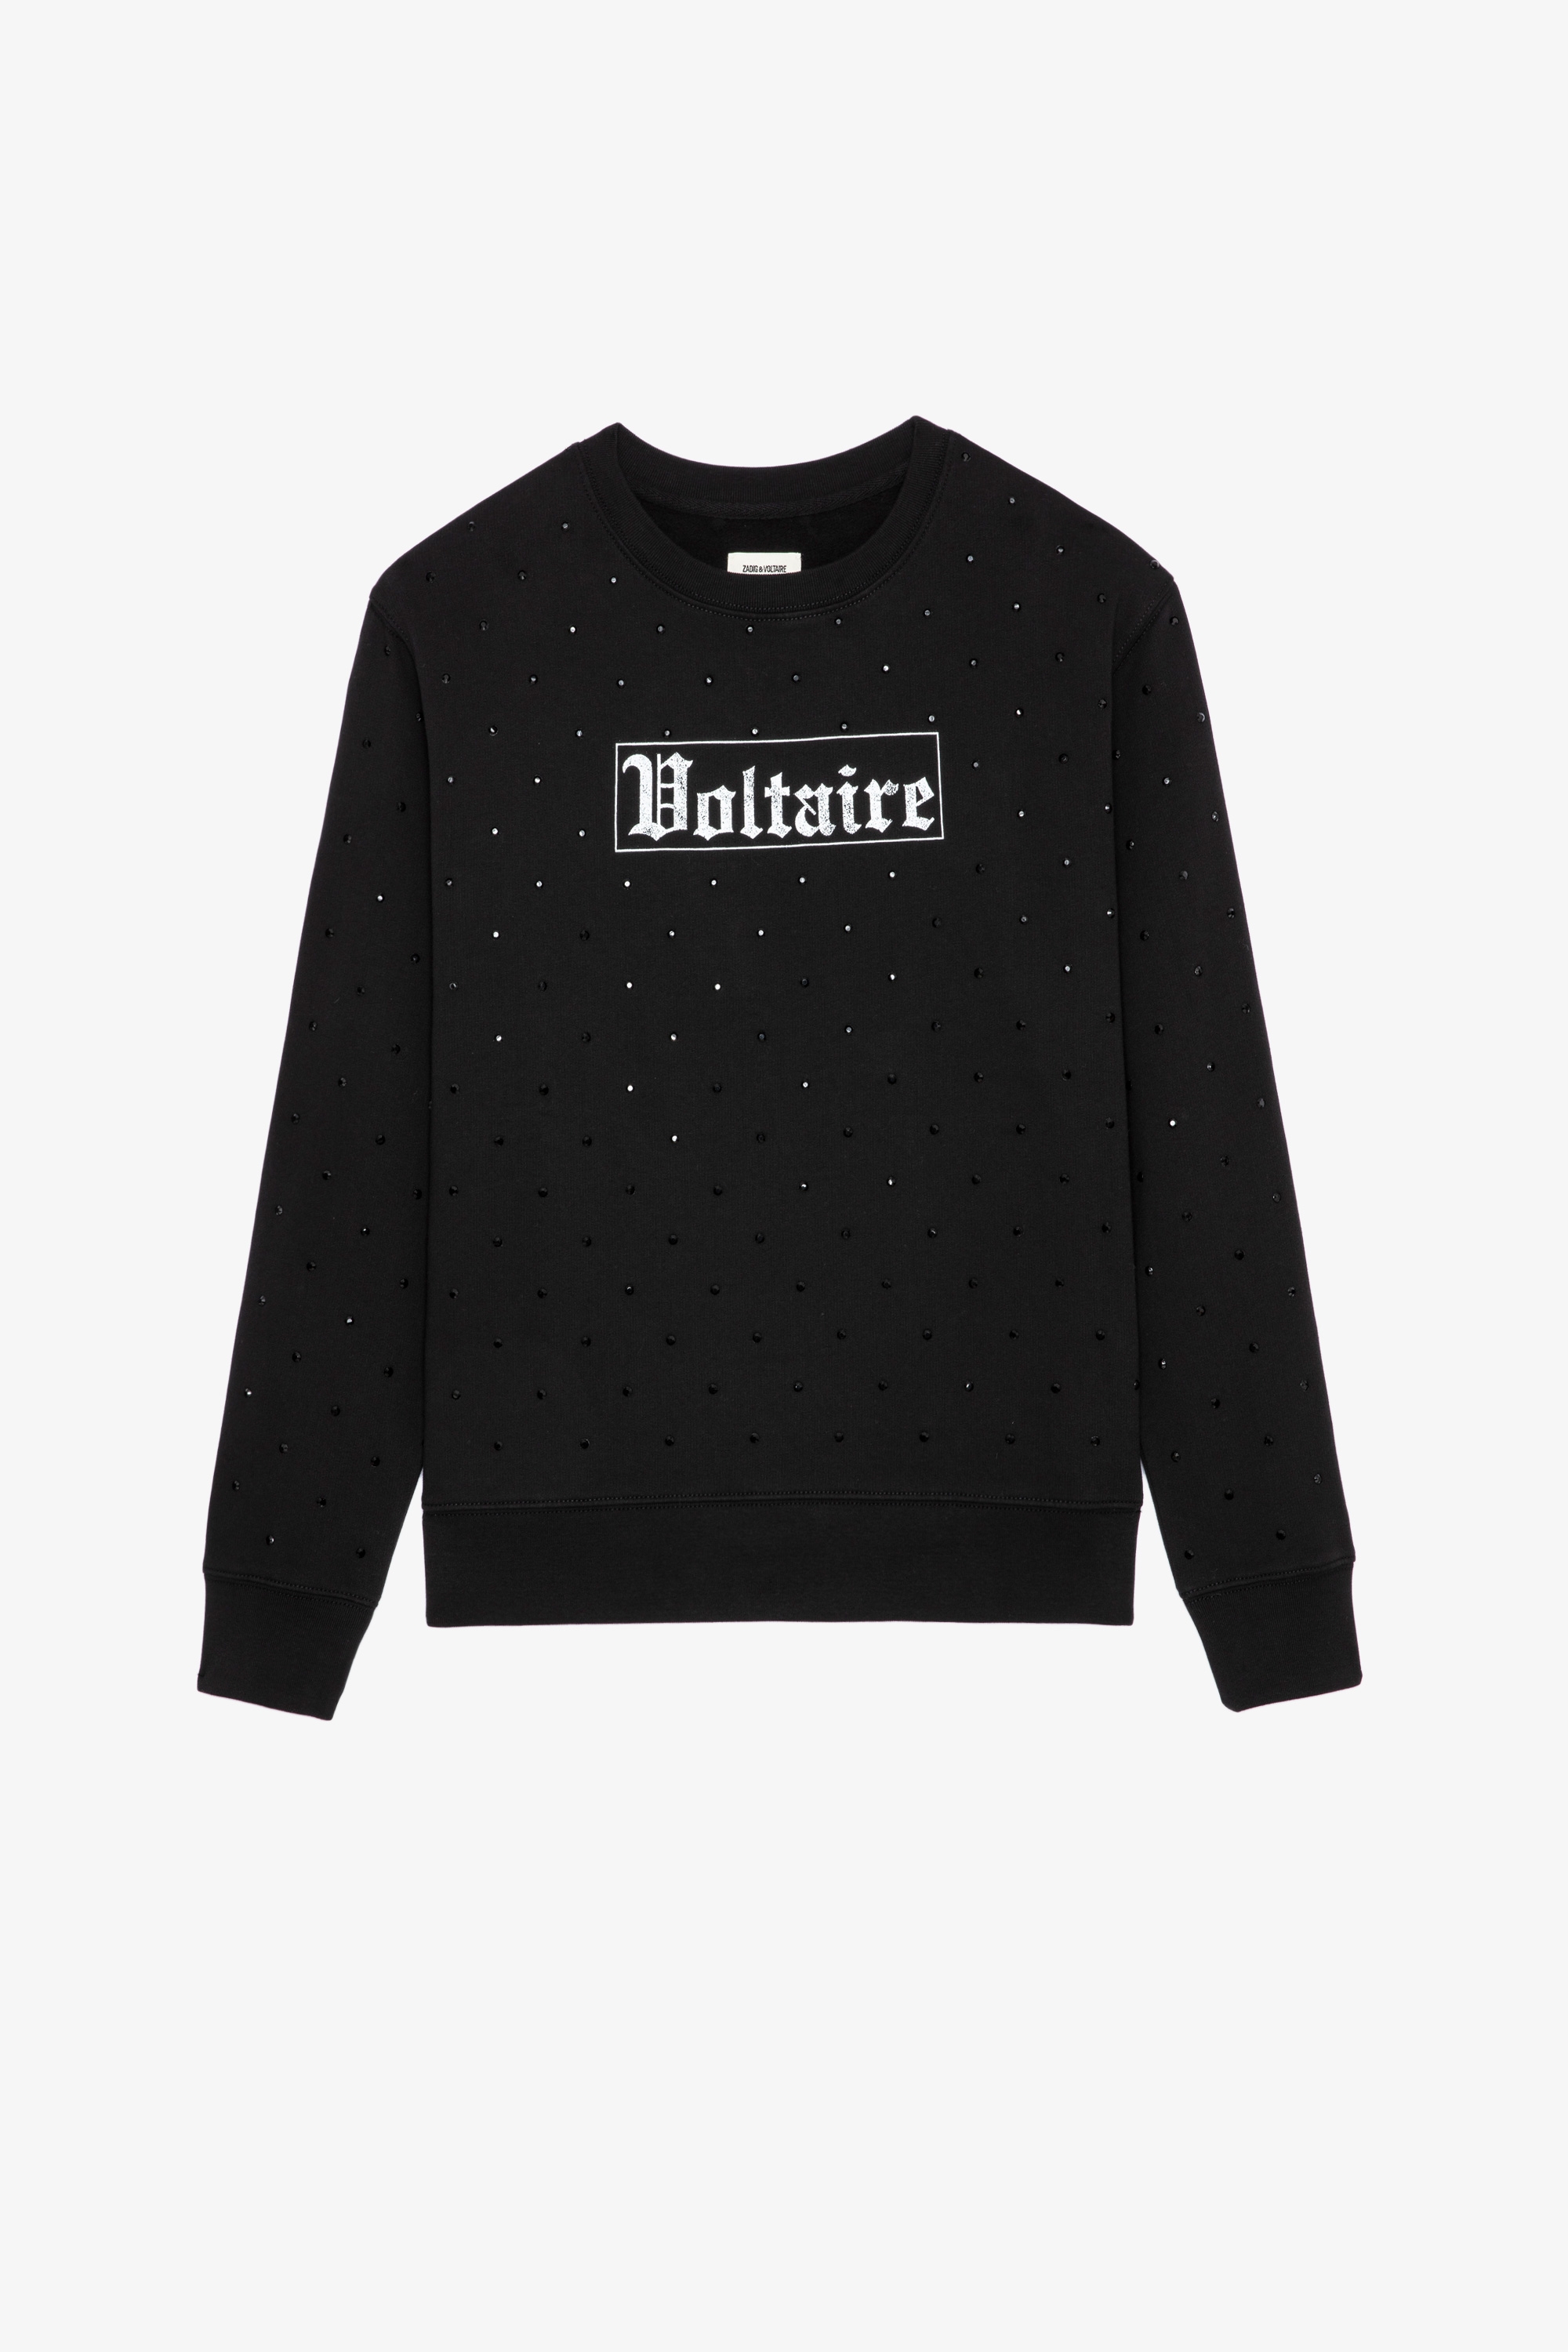 Nala Voltaire Sweatshirt